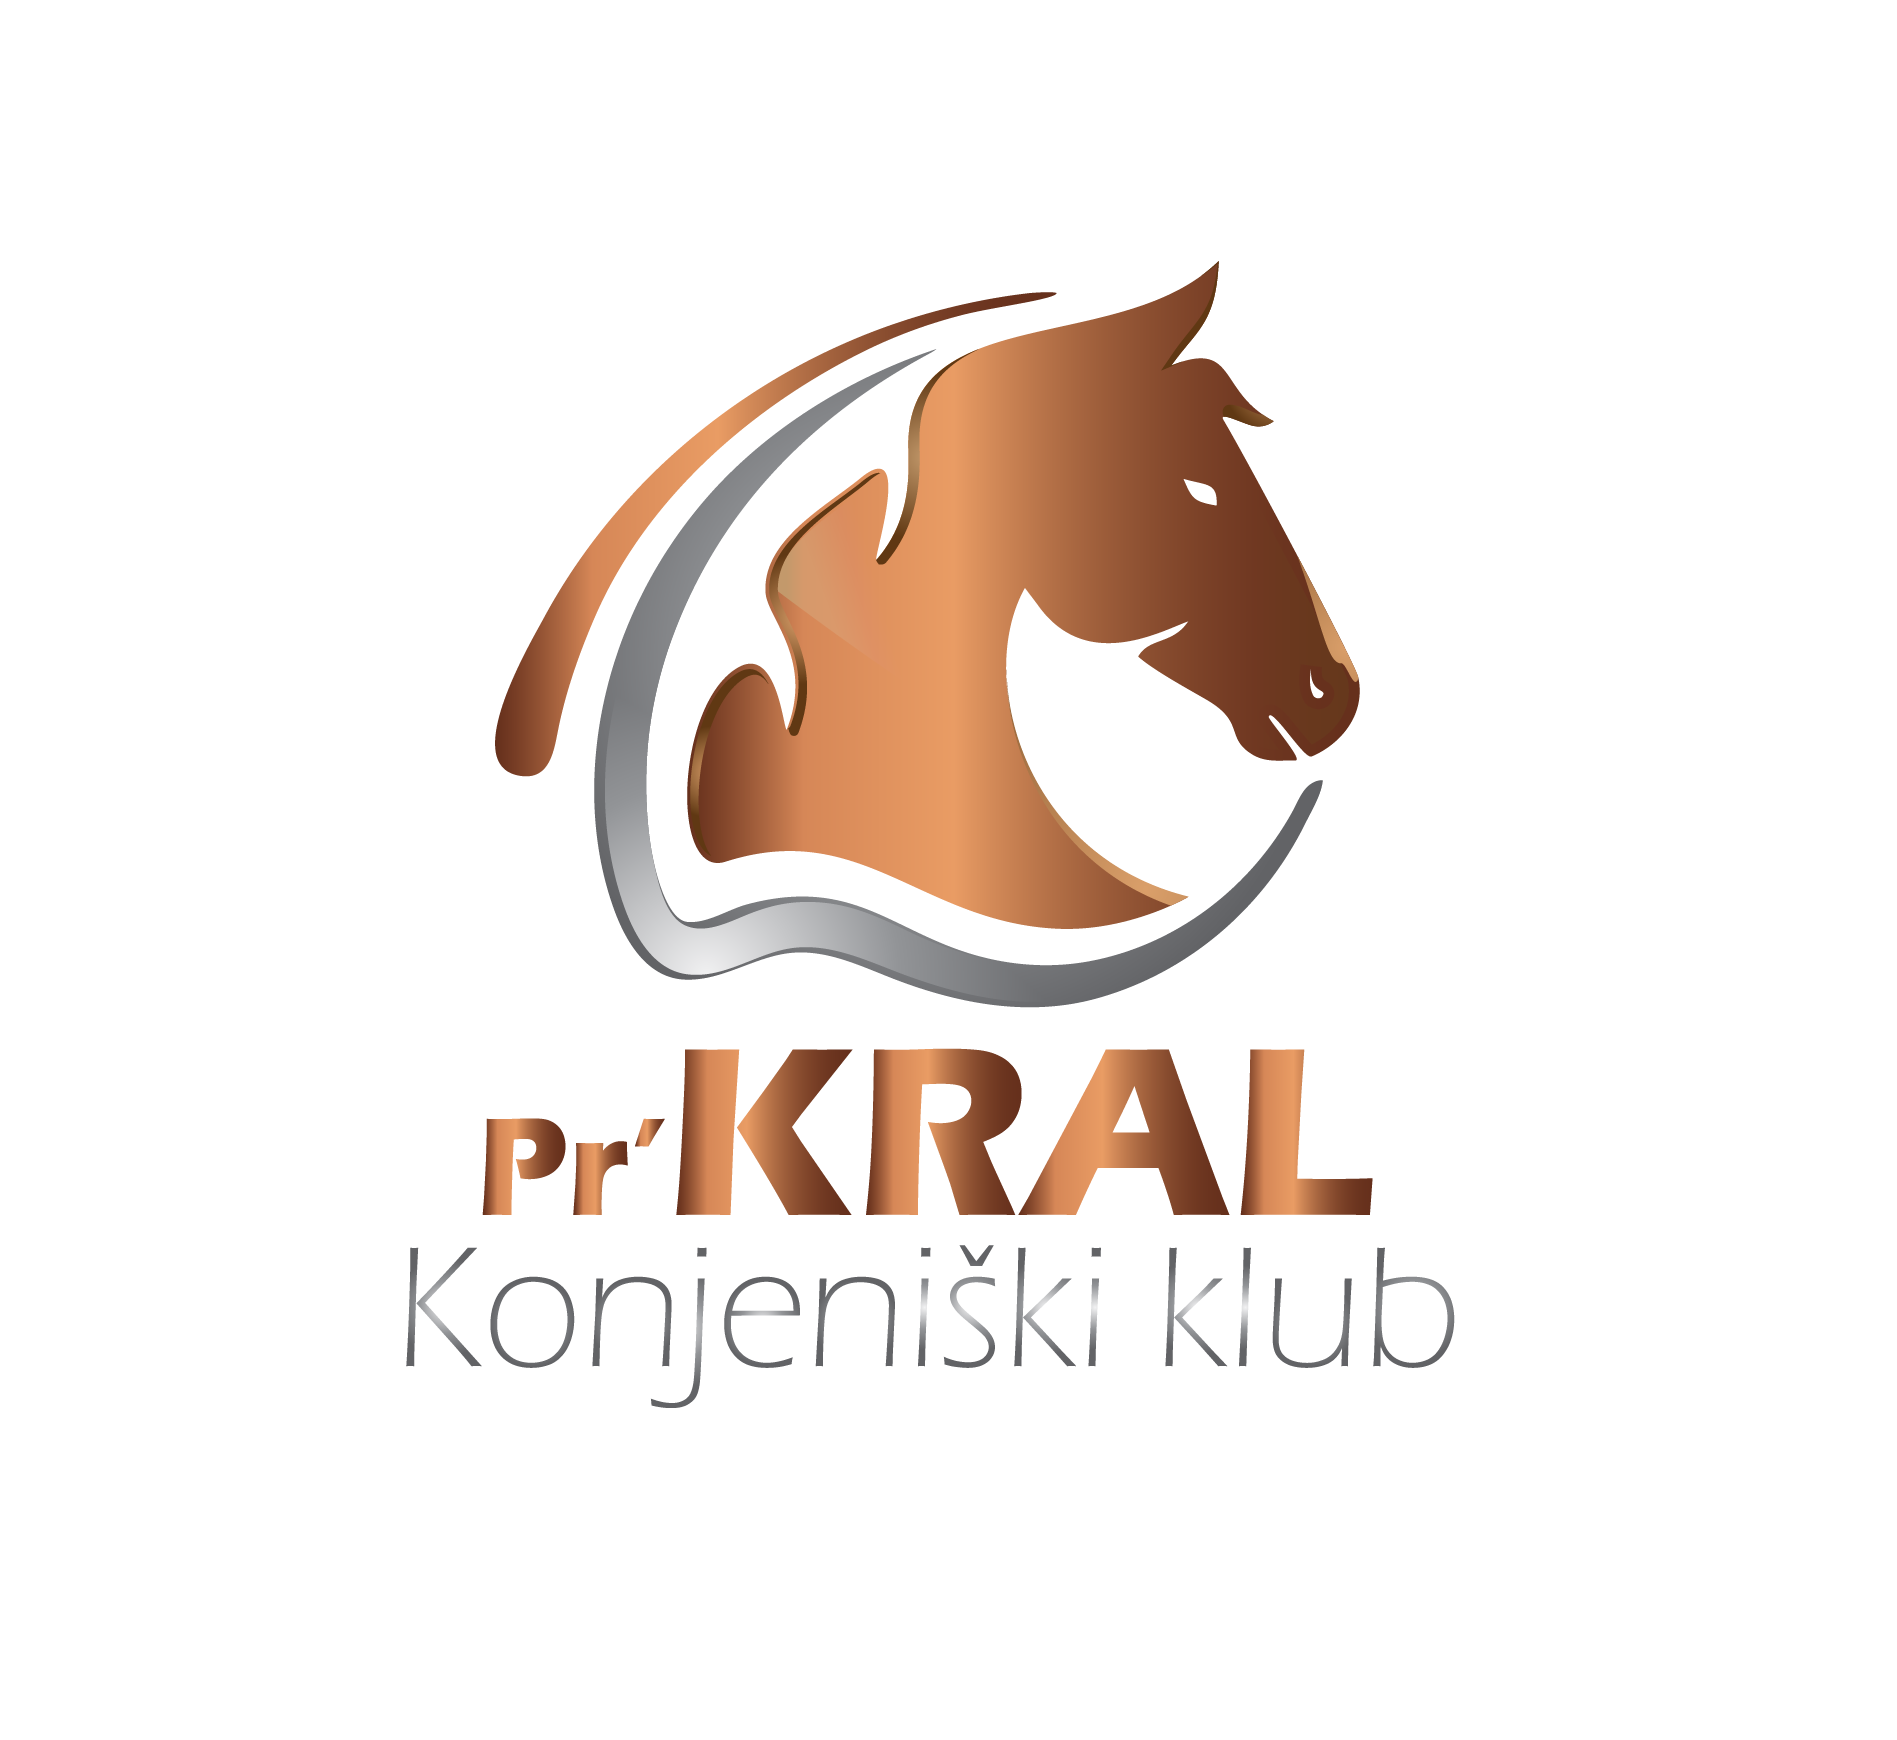 KK_prKral_logo-01